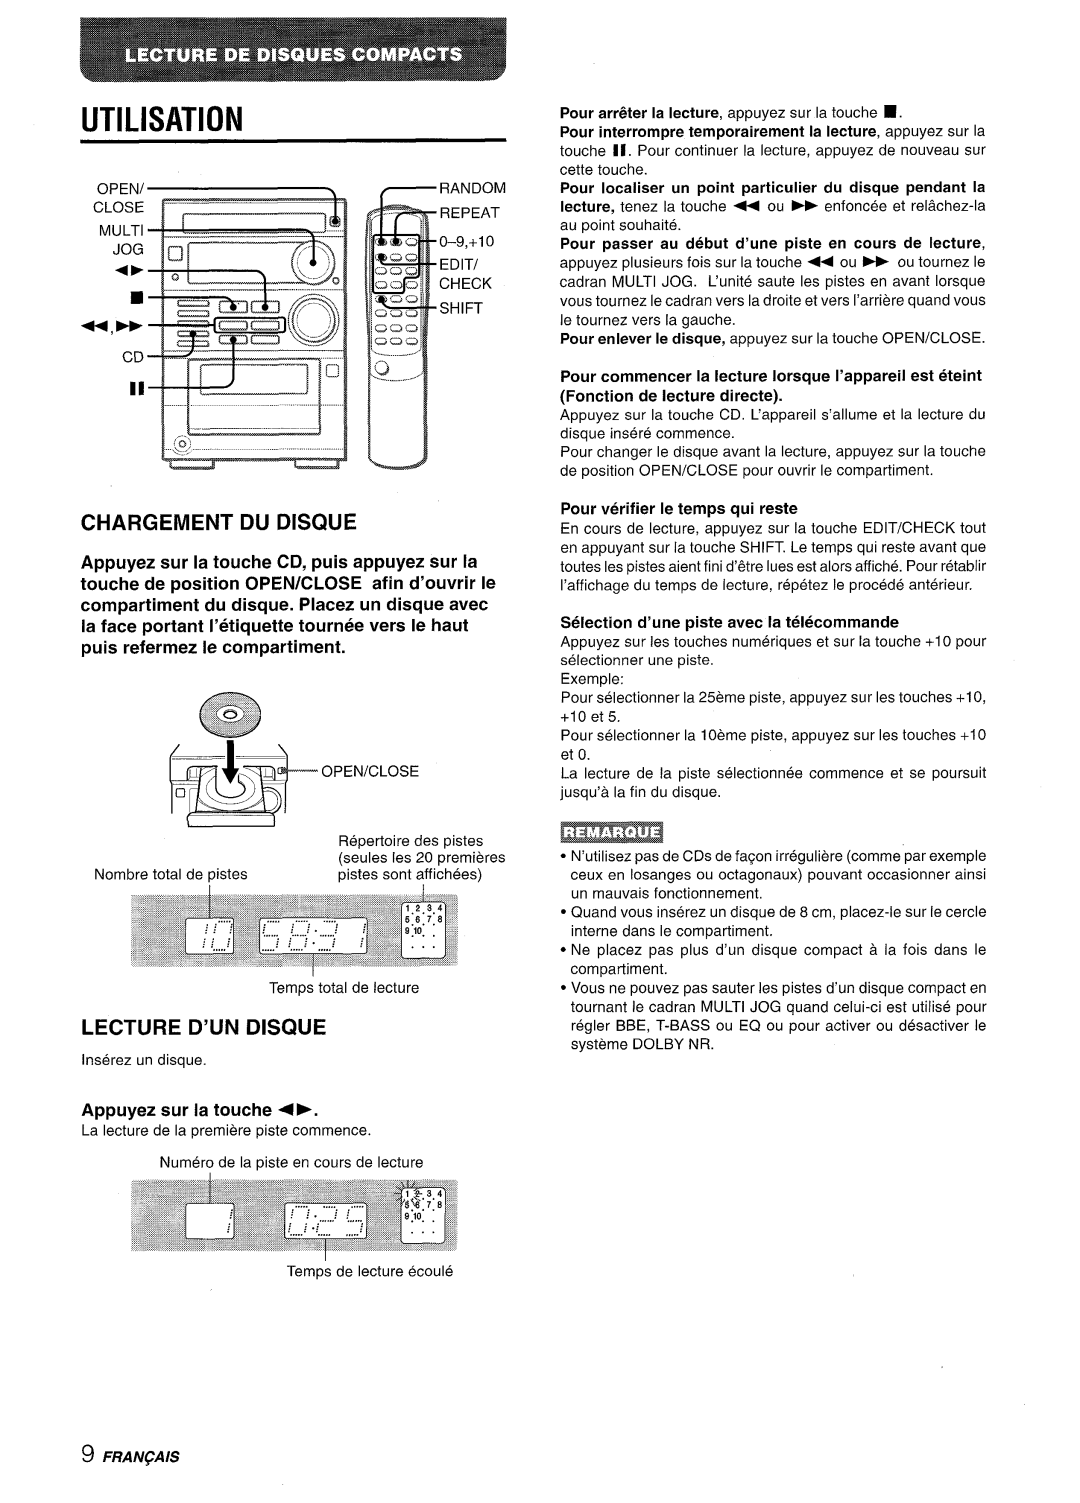 Aiwa XR-M35 manual Utilisation, Chargement Du Discwe, Lecture D’Un Disque, Appuyez sur la touche CD, puis appuyez sur la 